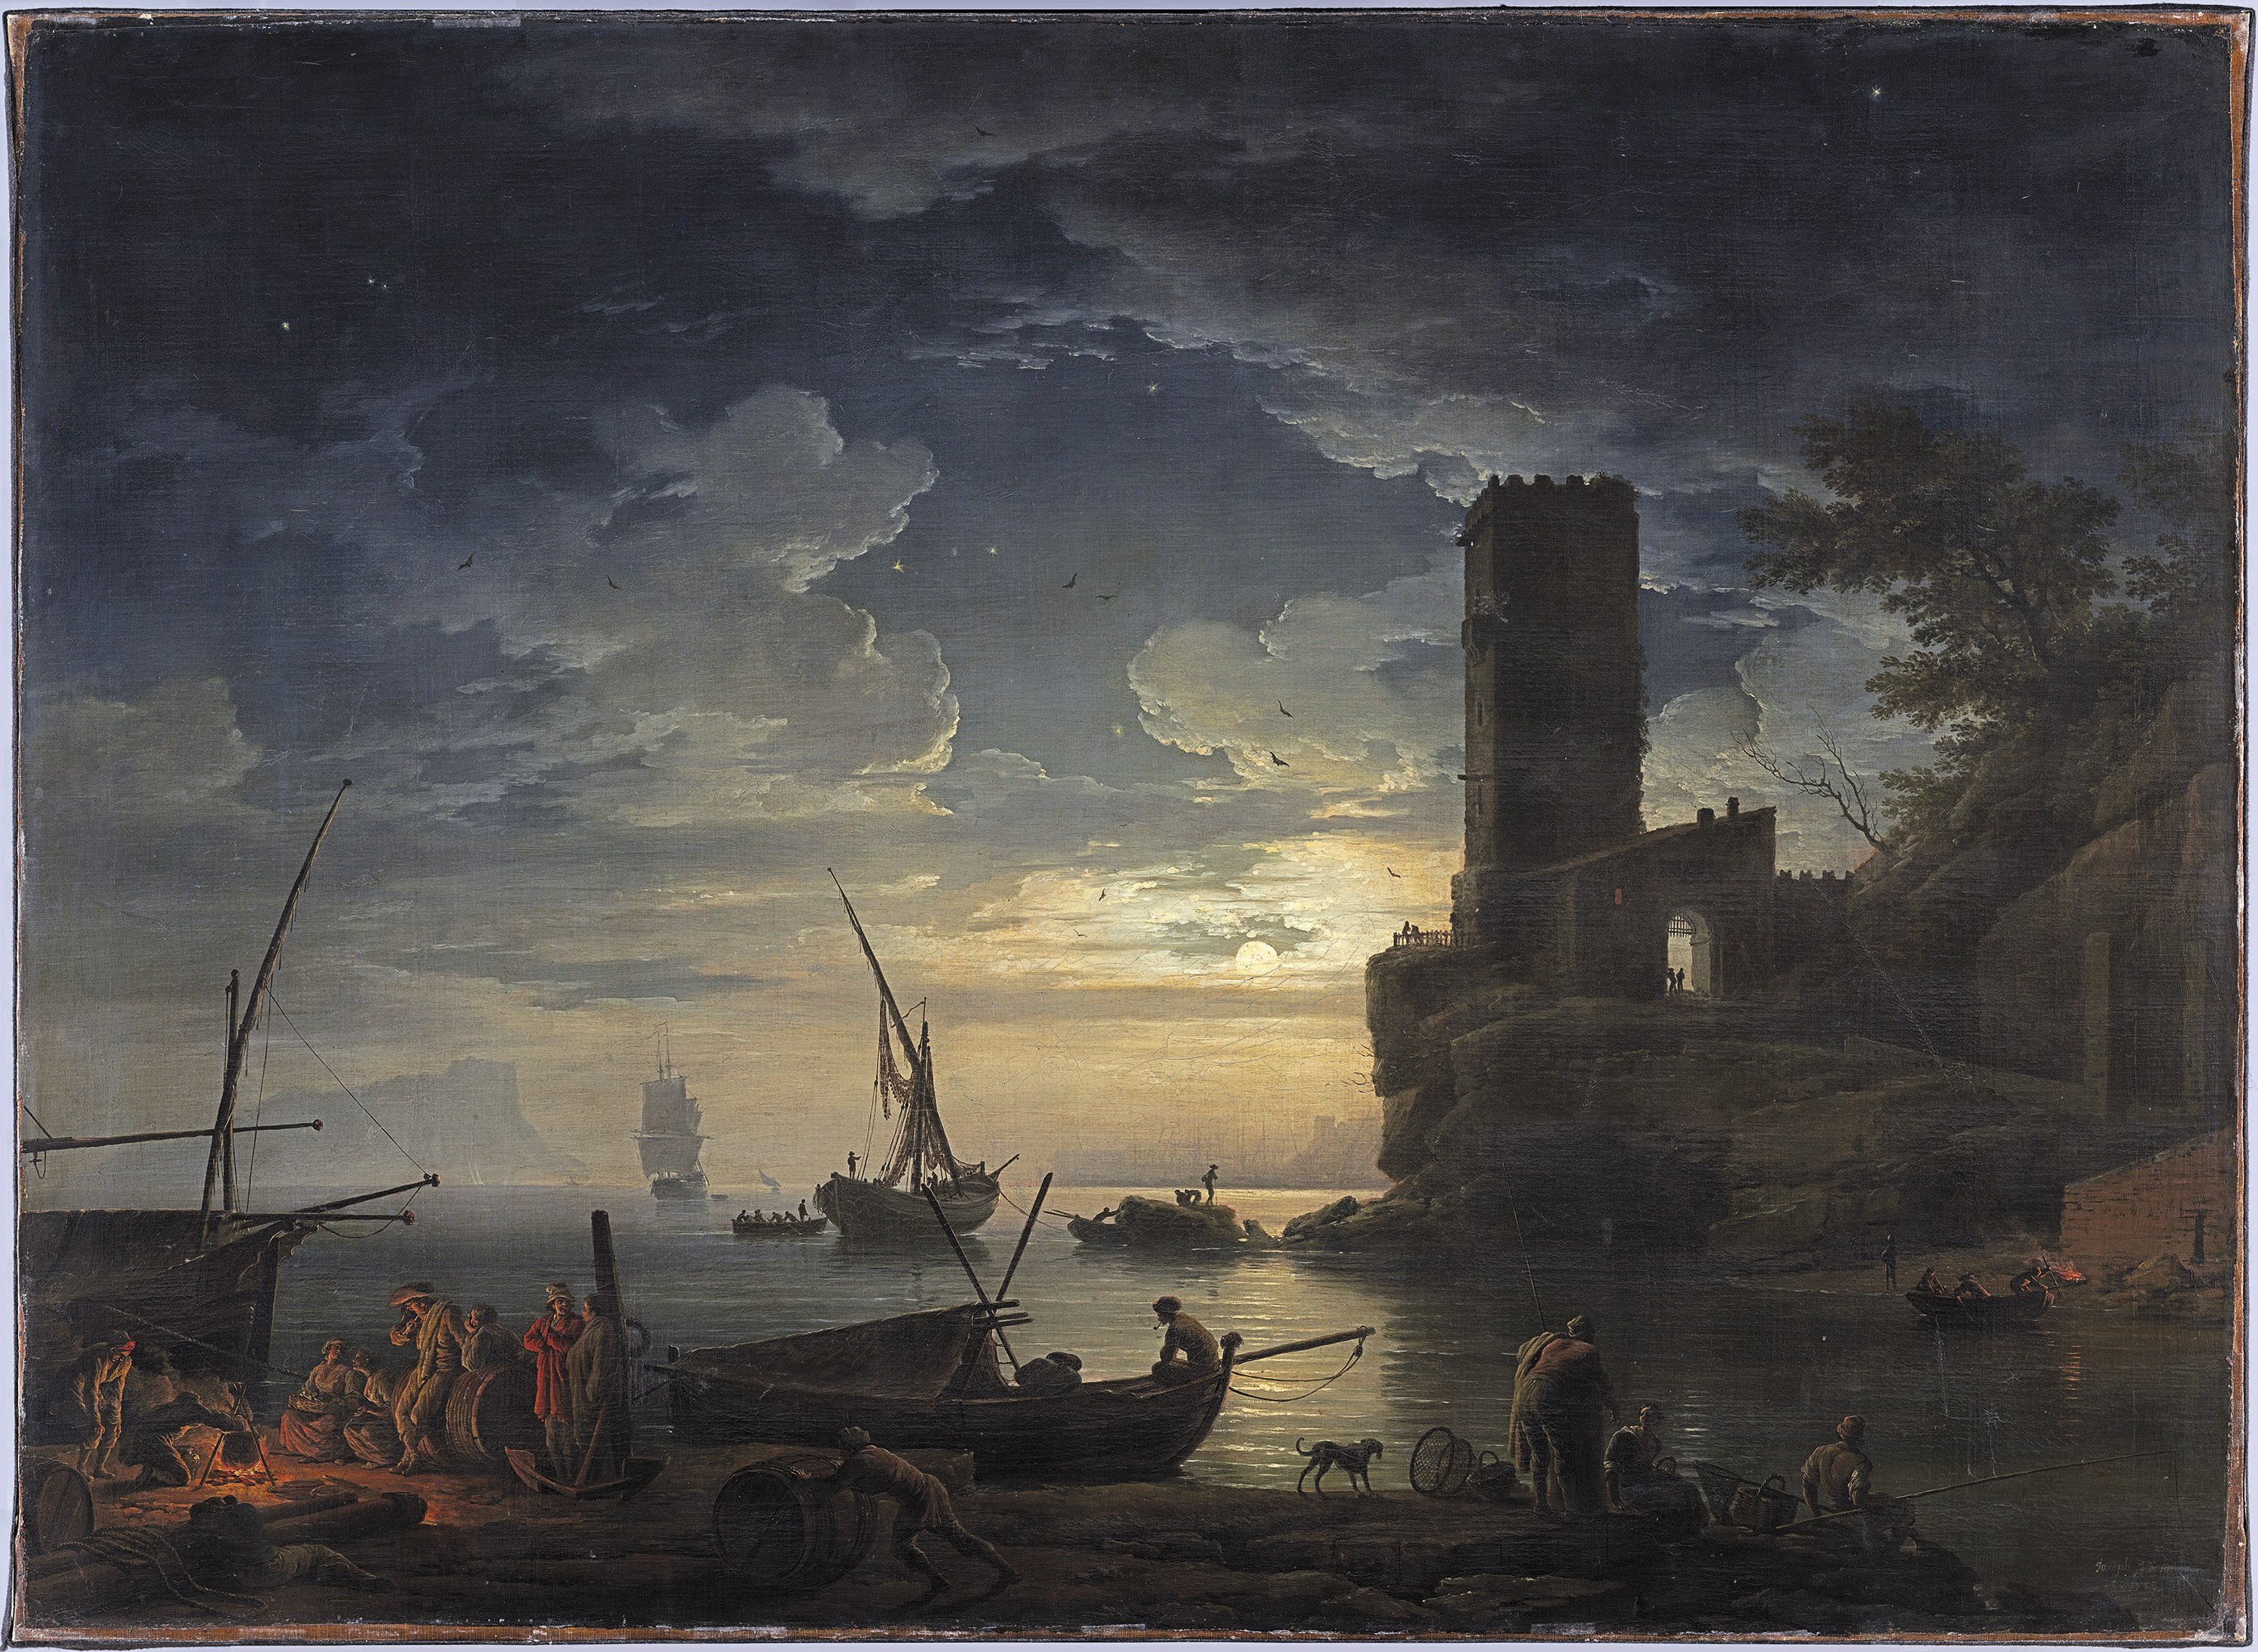 Noche: escena de la costa mediterránea con pescadores y barcas. Claude Joseph Vernet